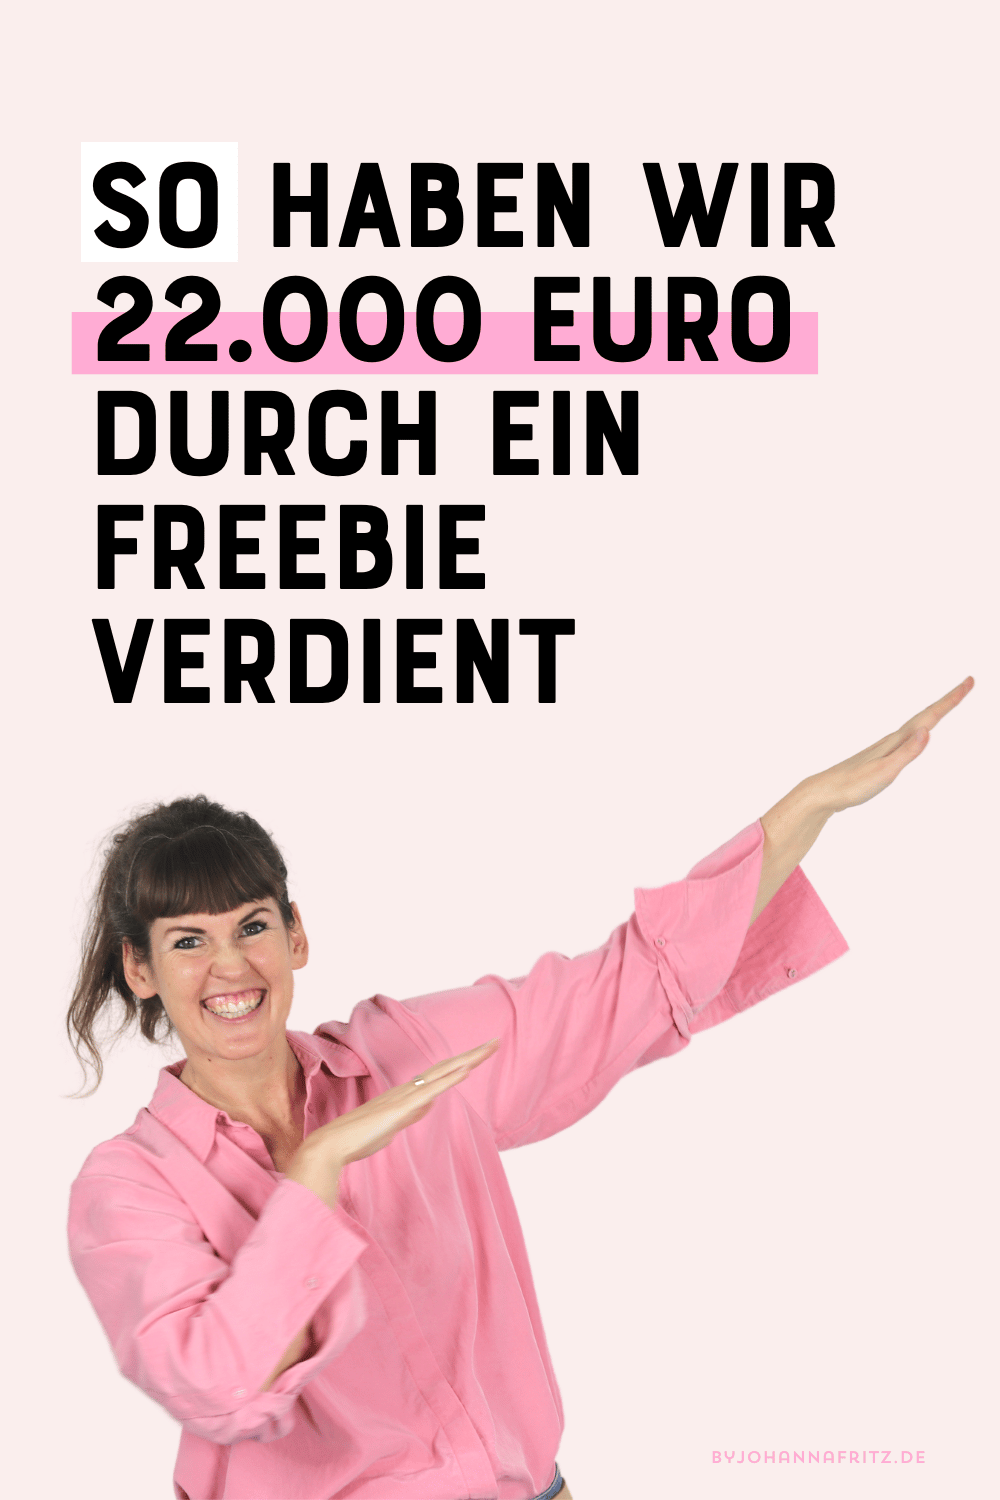 So haben wir 22000 Euro durch ein Freebie verdient by Johanna Fritz